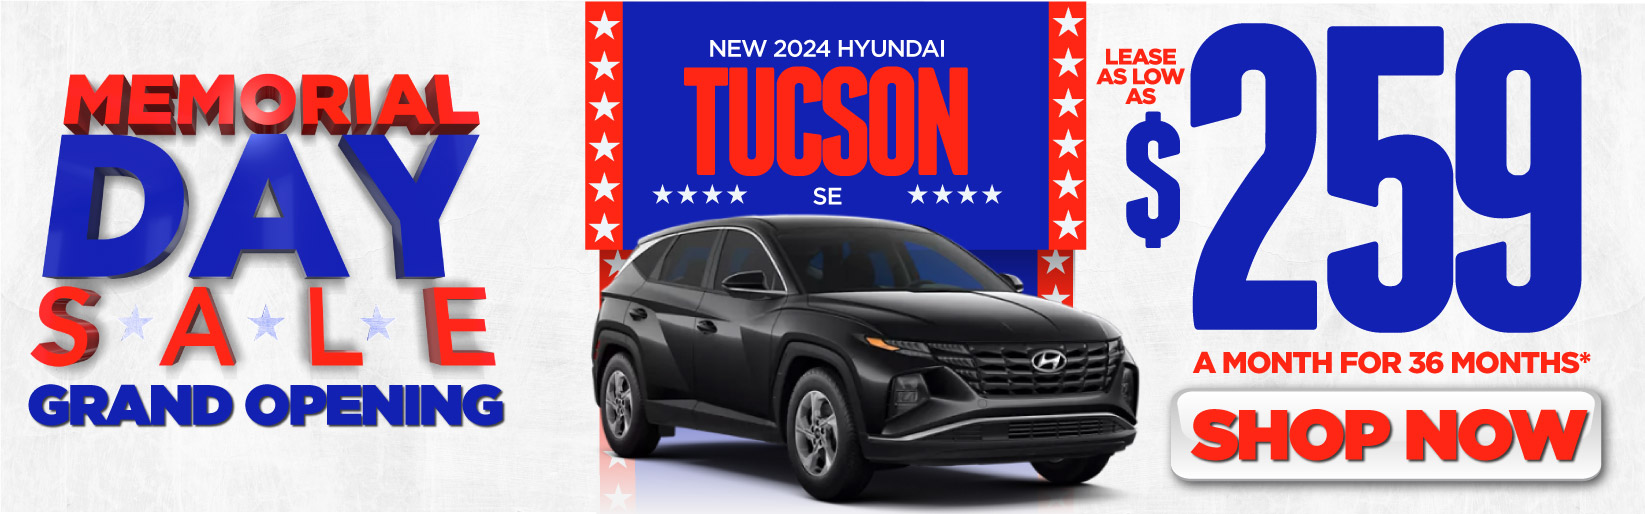 New 2024 Hyundai Elantra - 4.29% APR For 60 Mos.* + $500 HMF Dealer Choice Cash** – Act Now